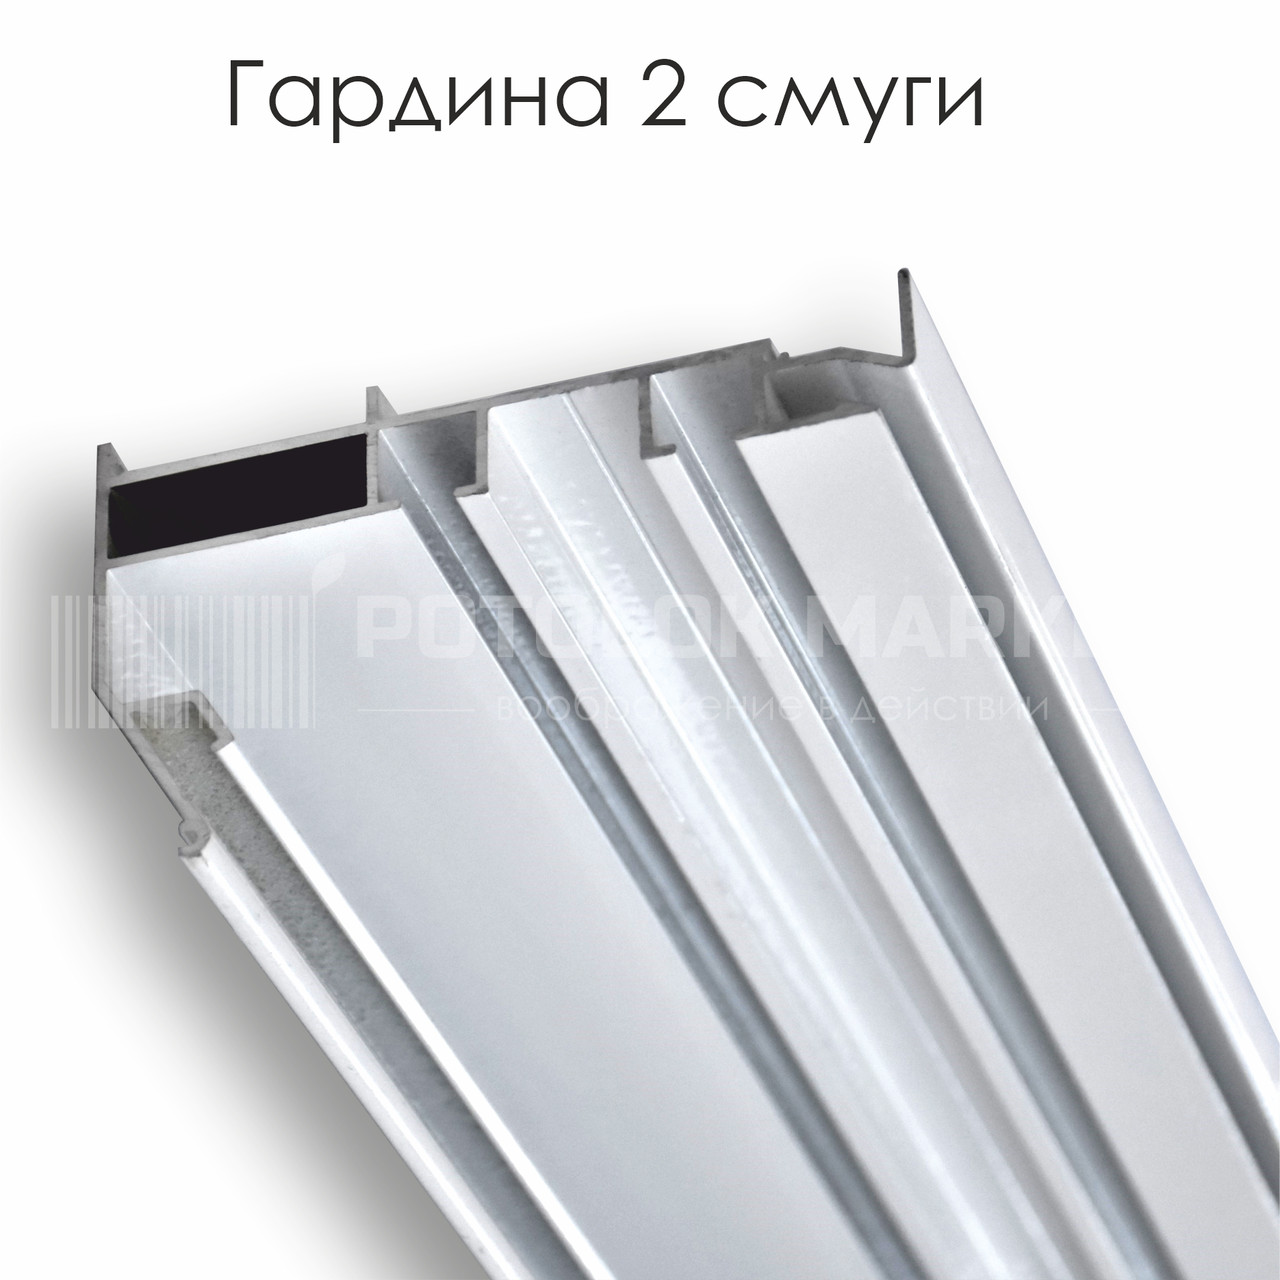 Профіль алюмінієвий для натяжних стель - «Гардина», 2 смуги (ГК), Білий - 945 г